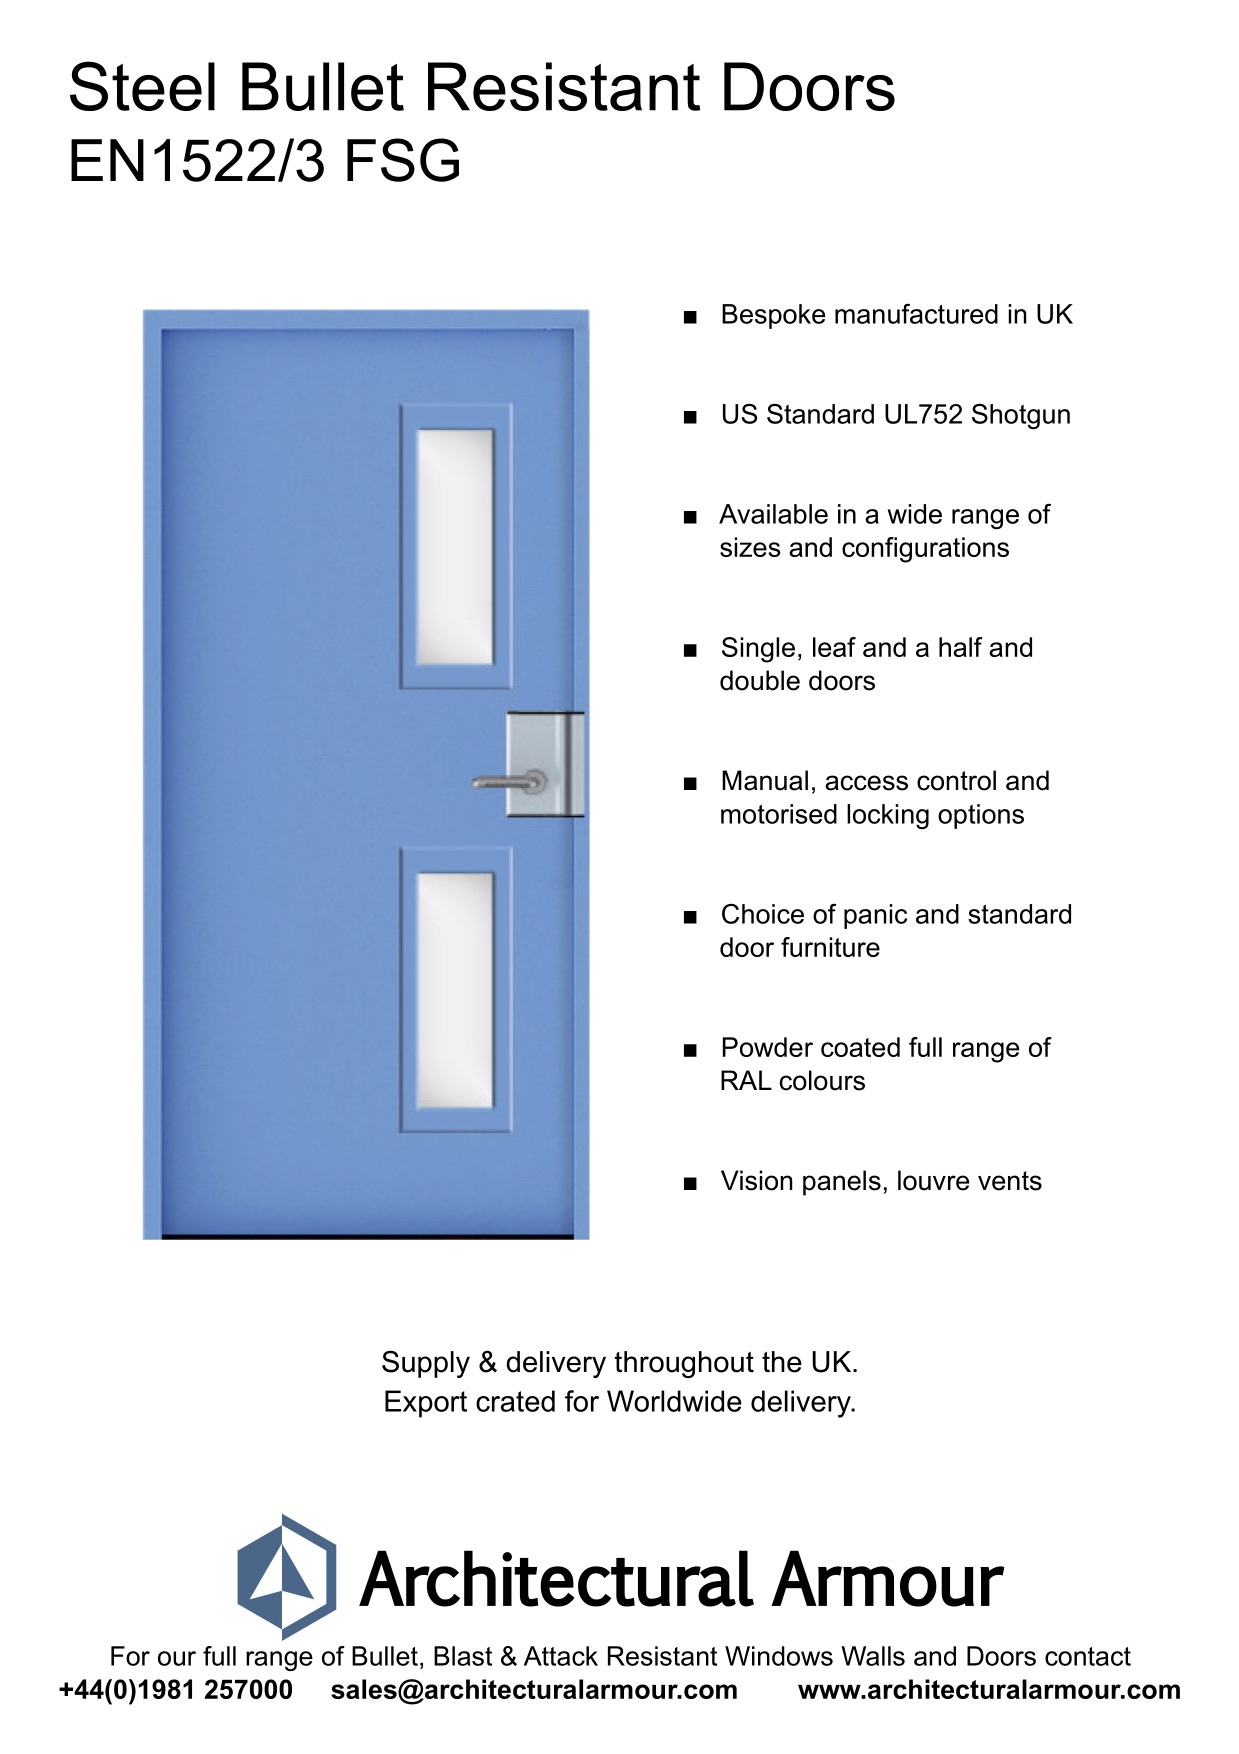 EN1522-3-FSG-Bullet-Resistant-Metal-Security-Door-UK